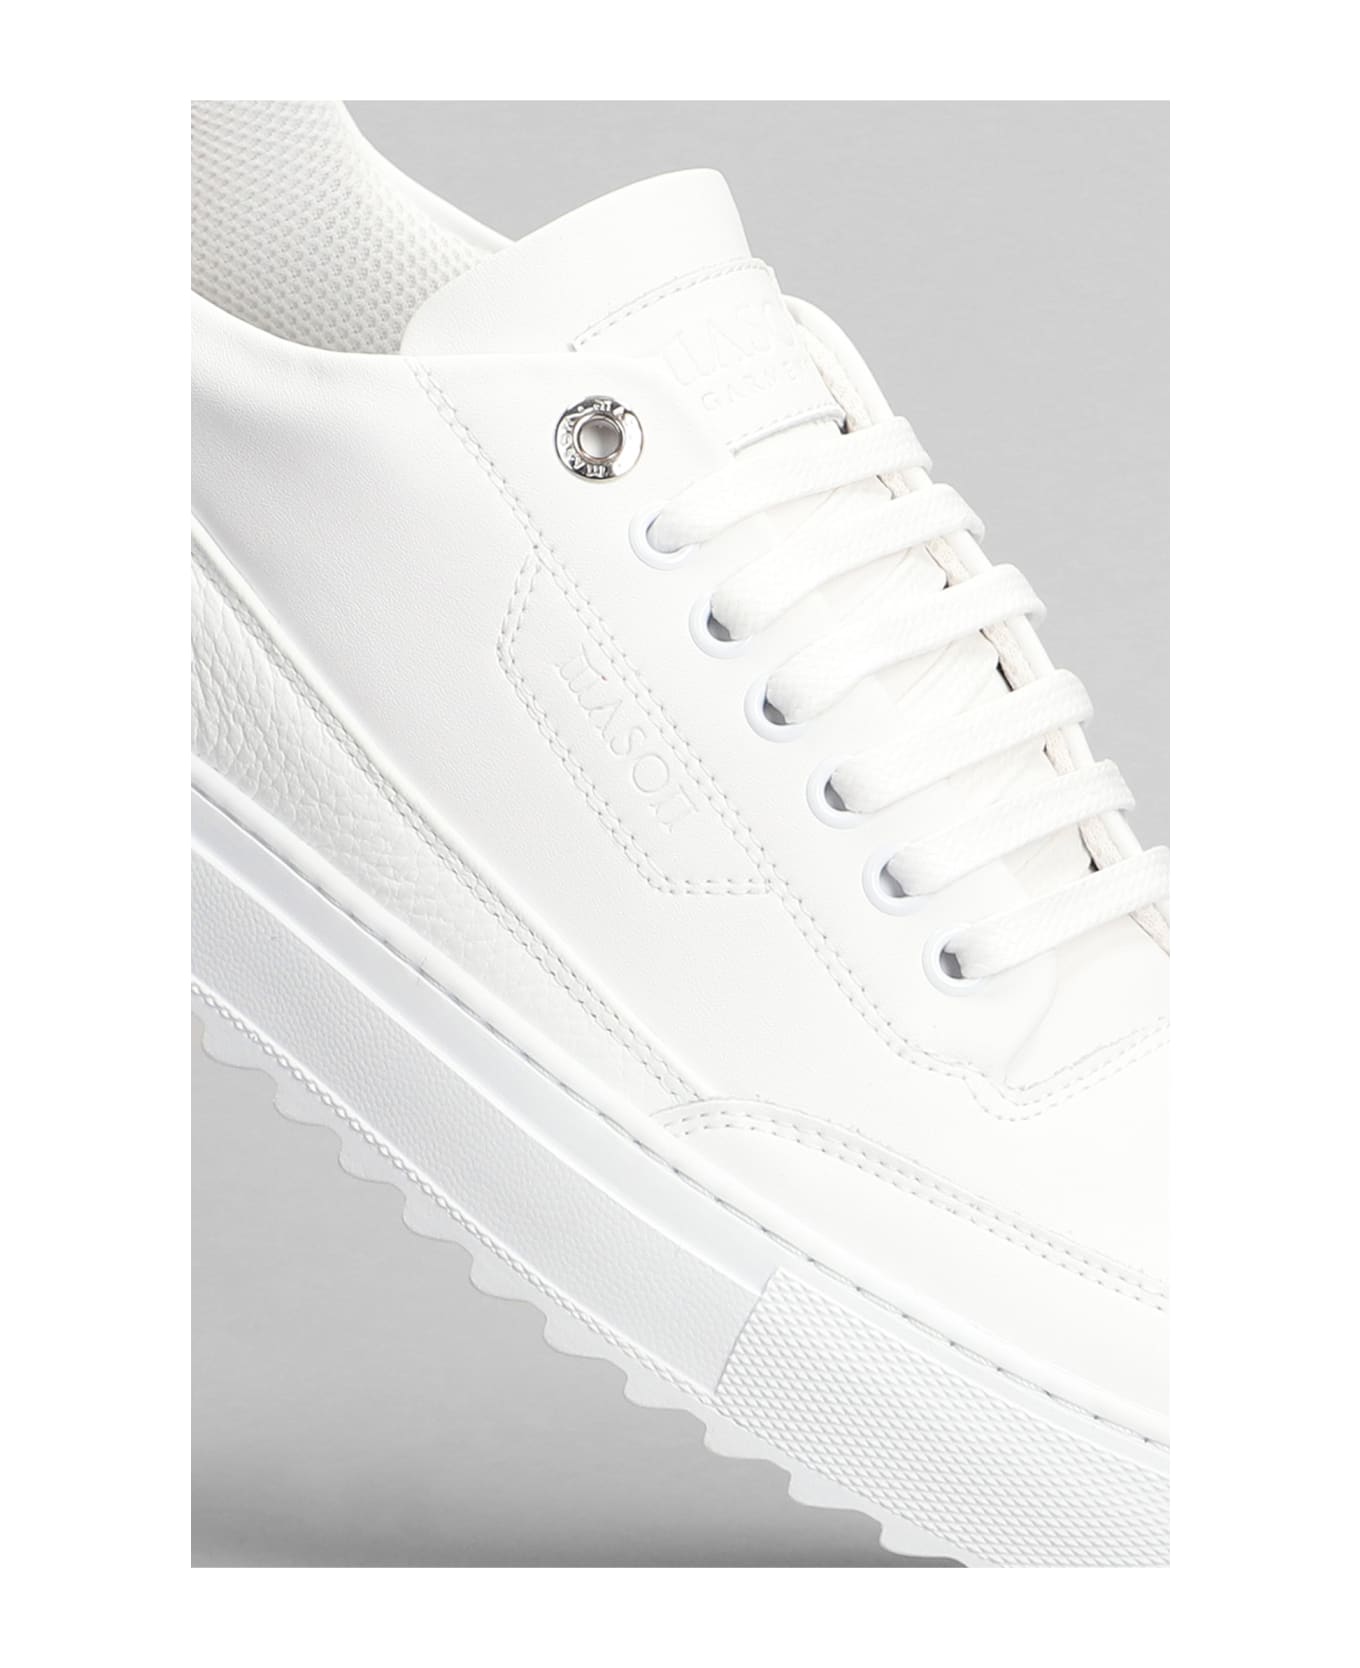 Mason Garments Torino Sneakers In White Leather - white